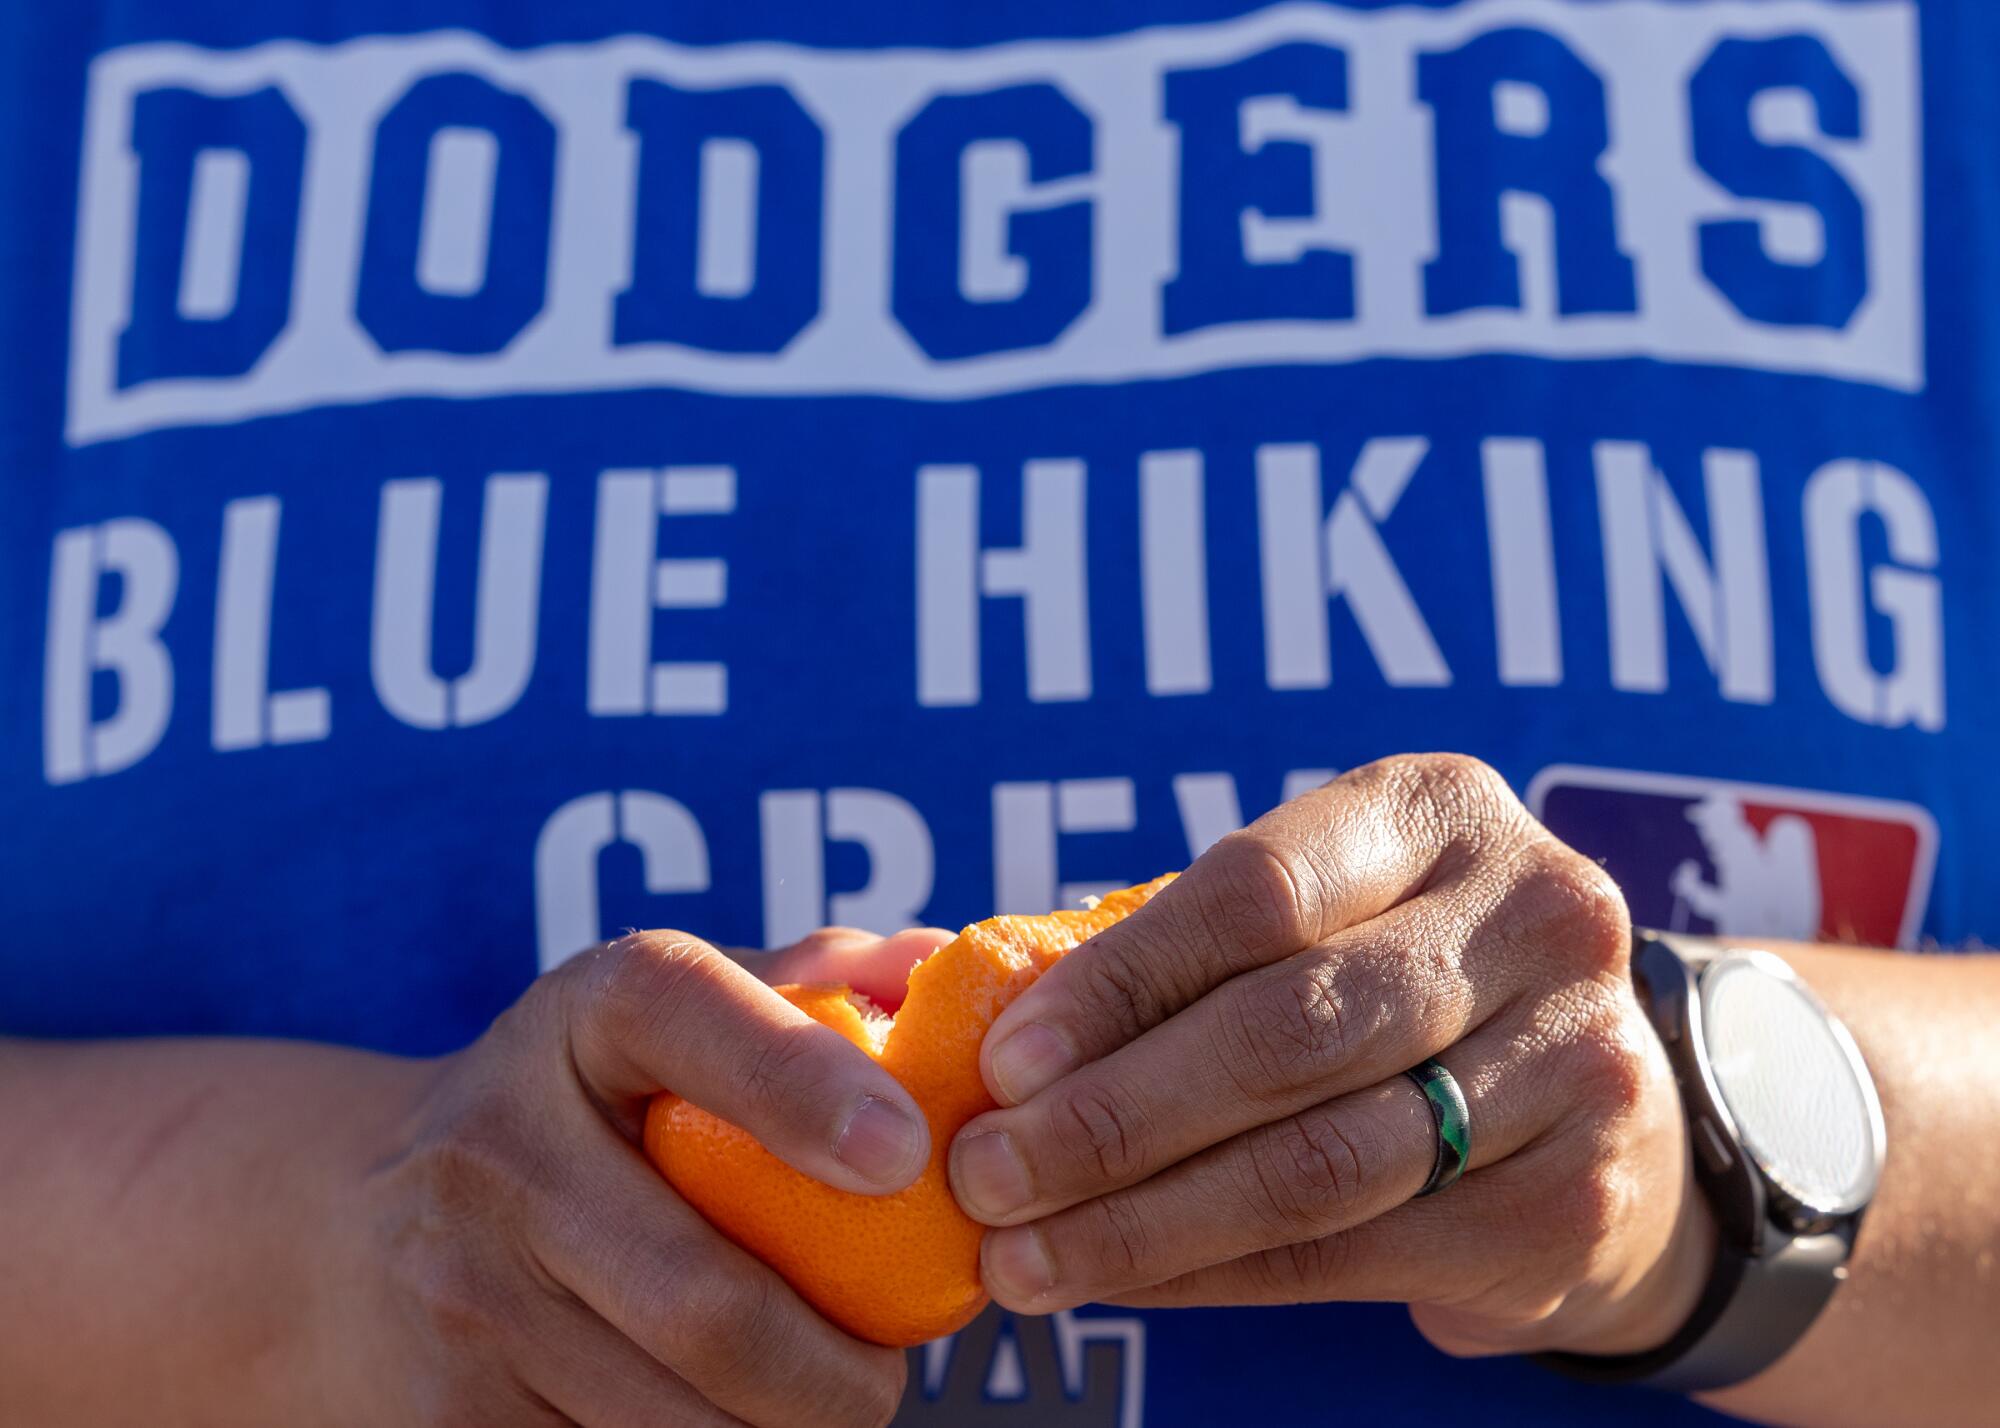 A hiker wearing custom Dodgers Blue Hiking Crew merchandise takes a break to peel a tangerine sandwich.